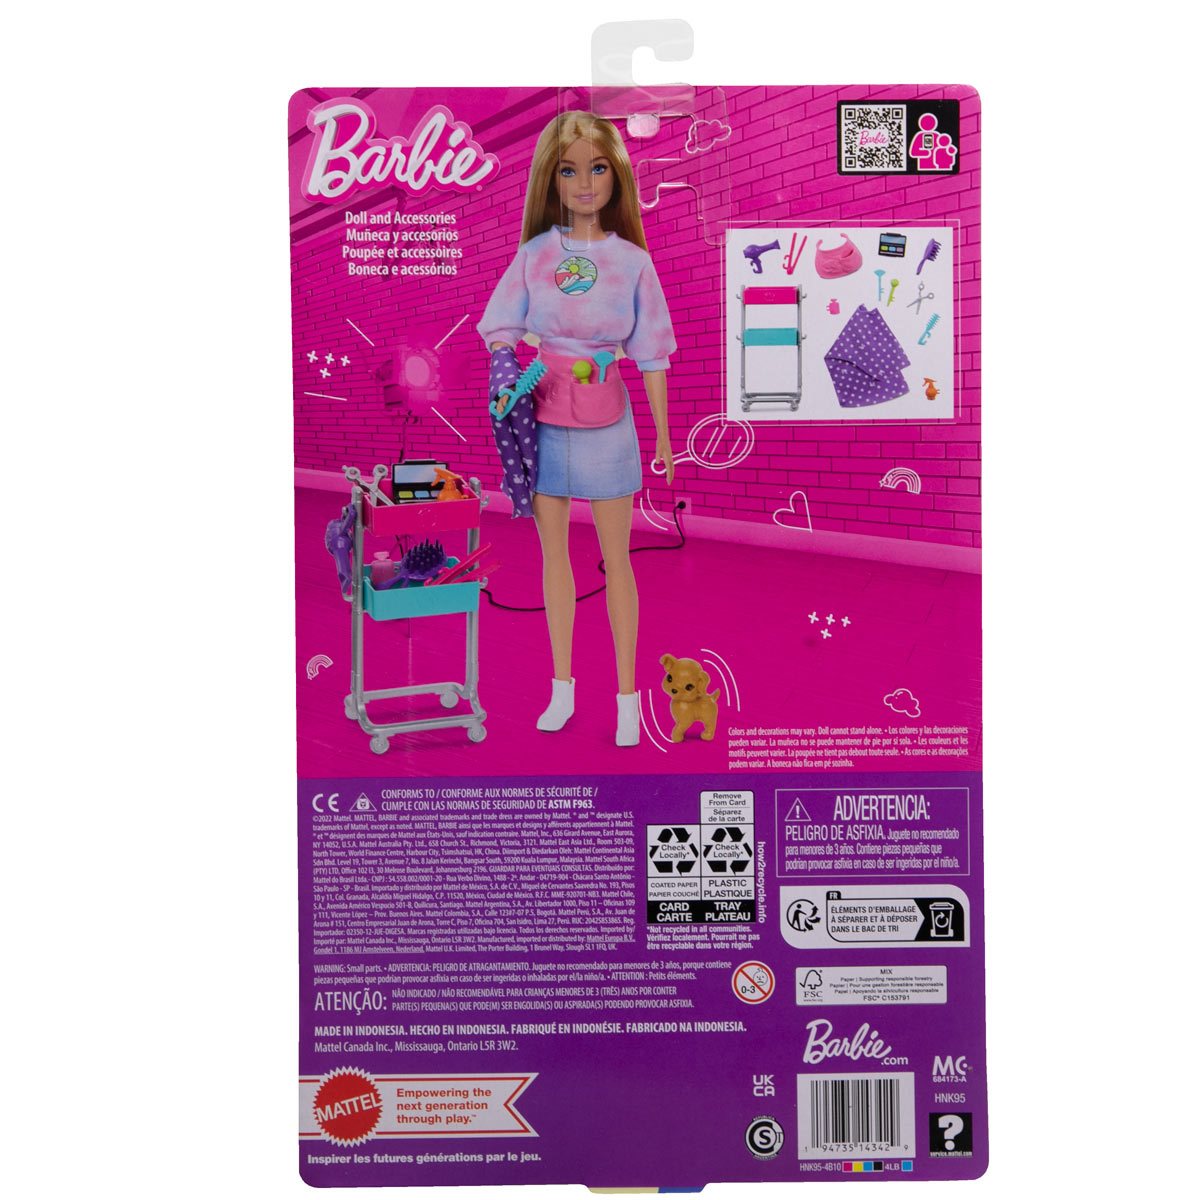 Barbie Malibu Stylist Doll Playset